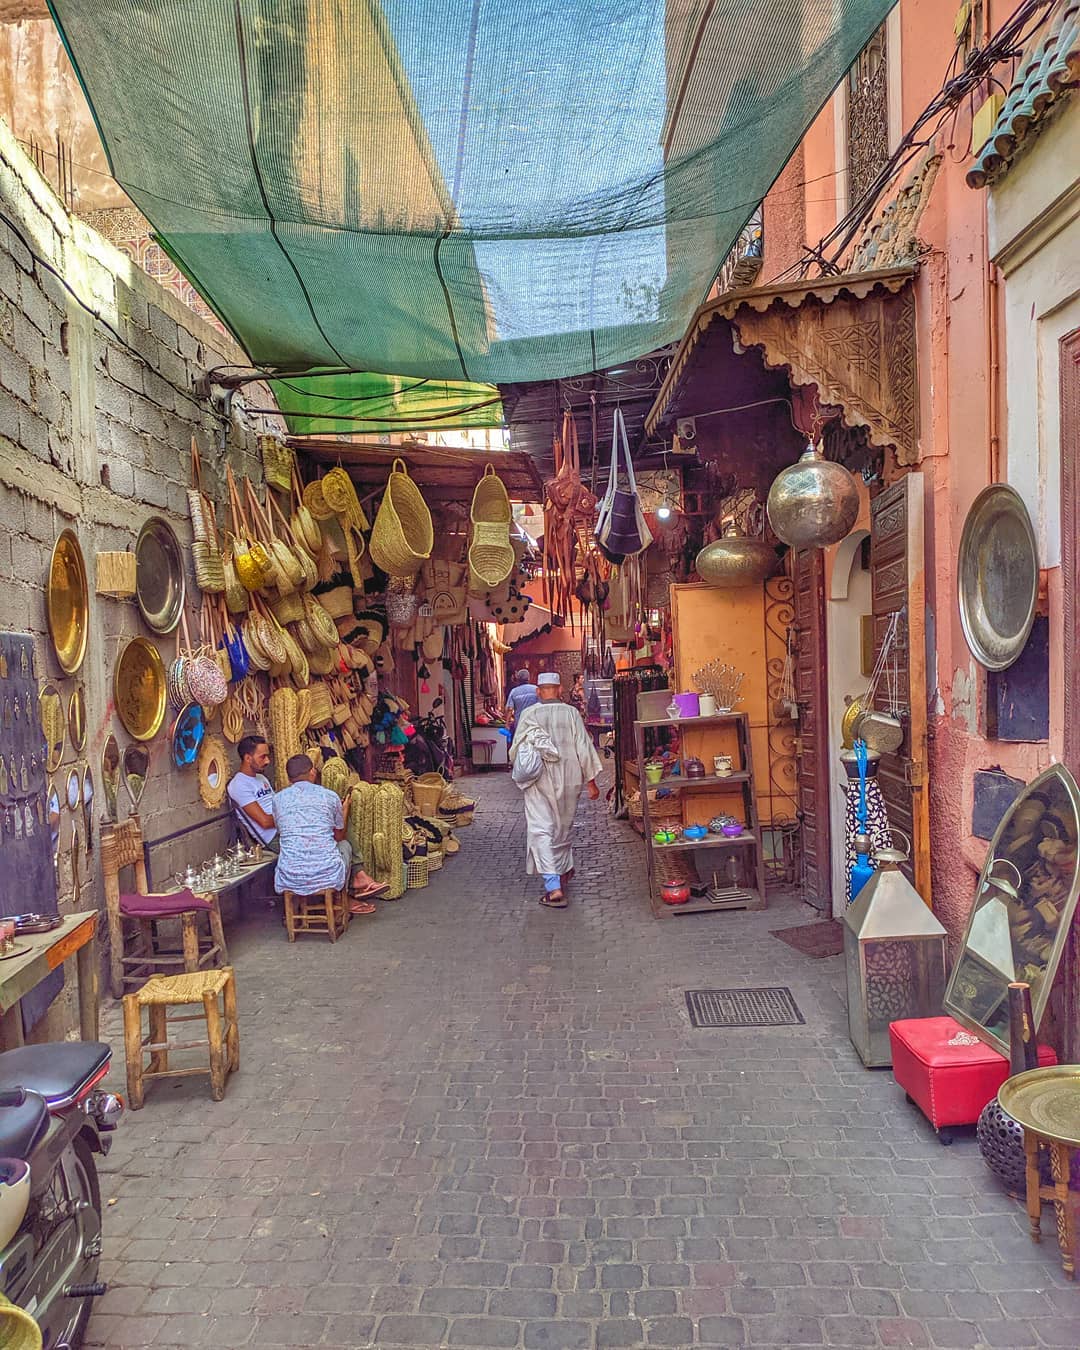 Guy walking through a market in Marrakech. Photo by Instagram user @nandoandre